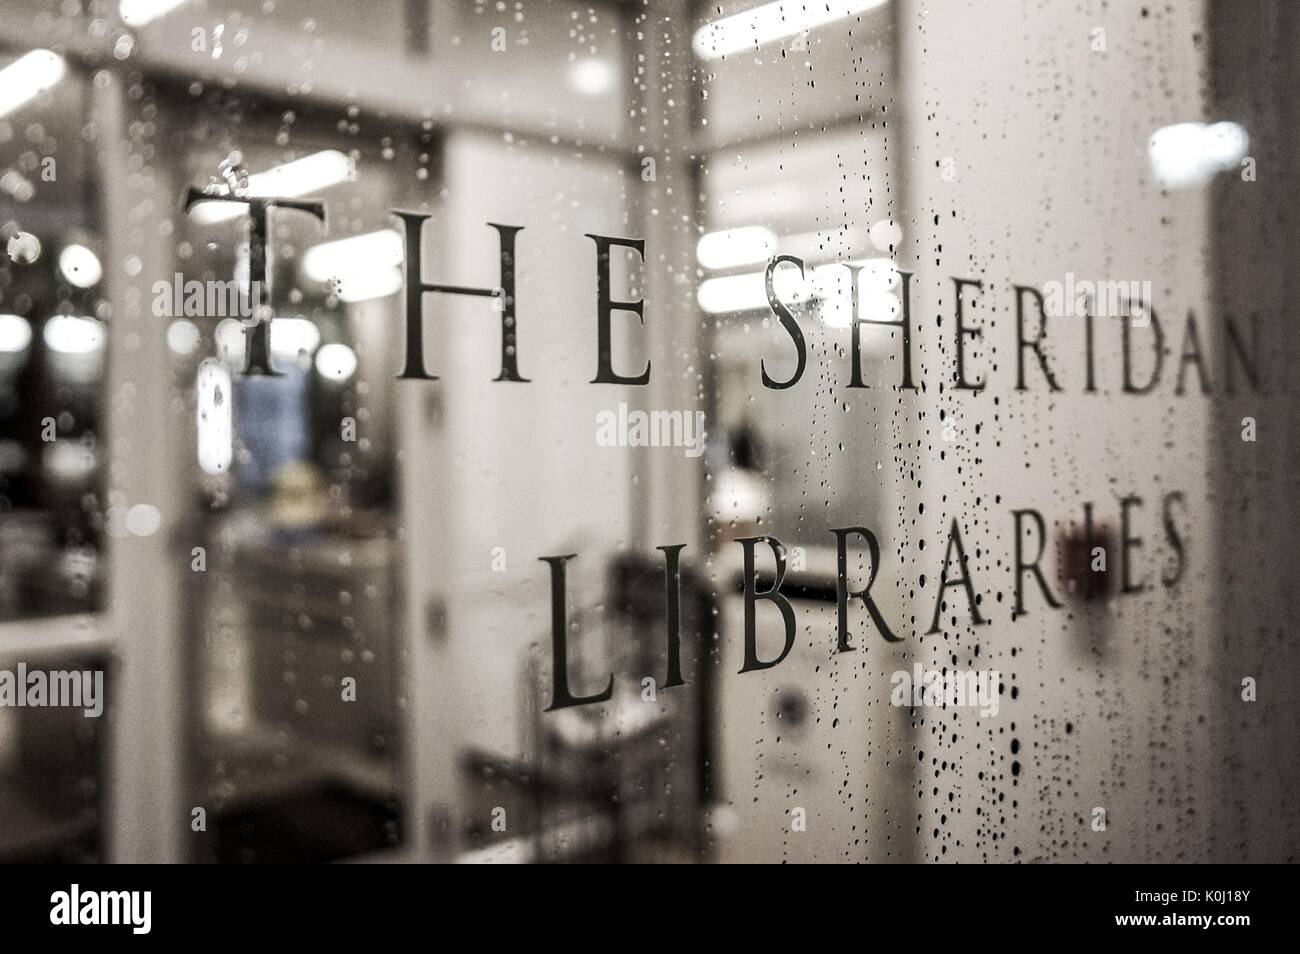 Un cartel de "bibliotecas" sheridan cubierto de gotas de lluvia, 2016. Cortesía de Eric Chen. Foto de stock